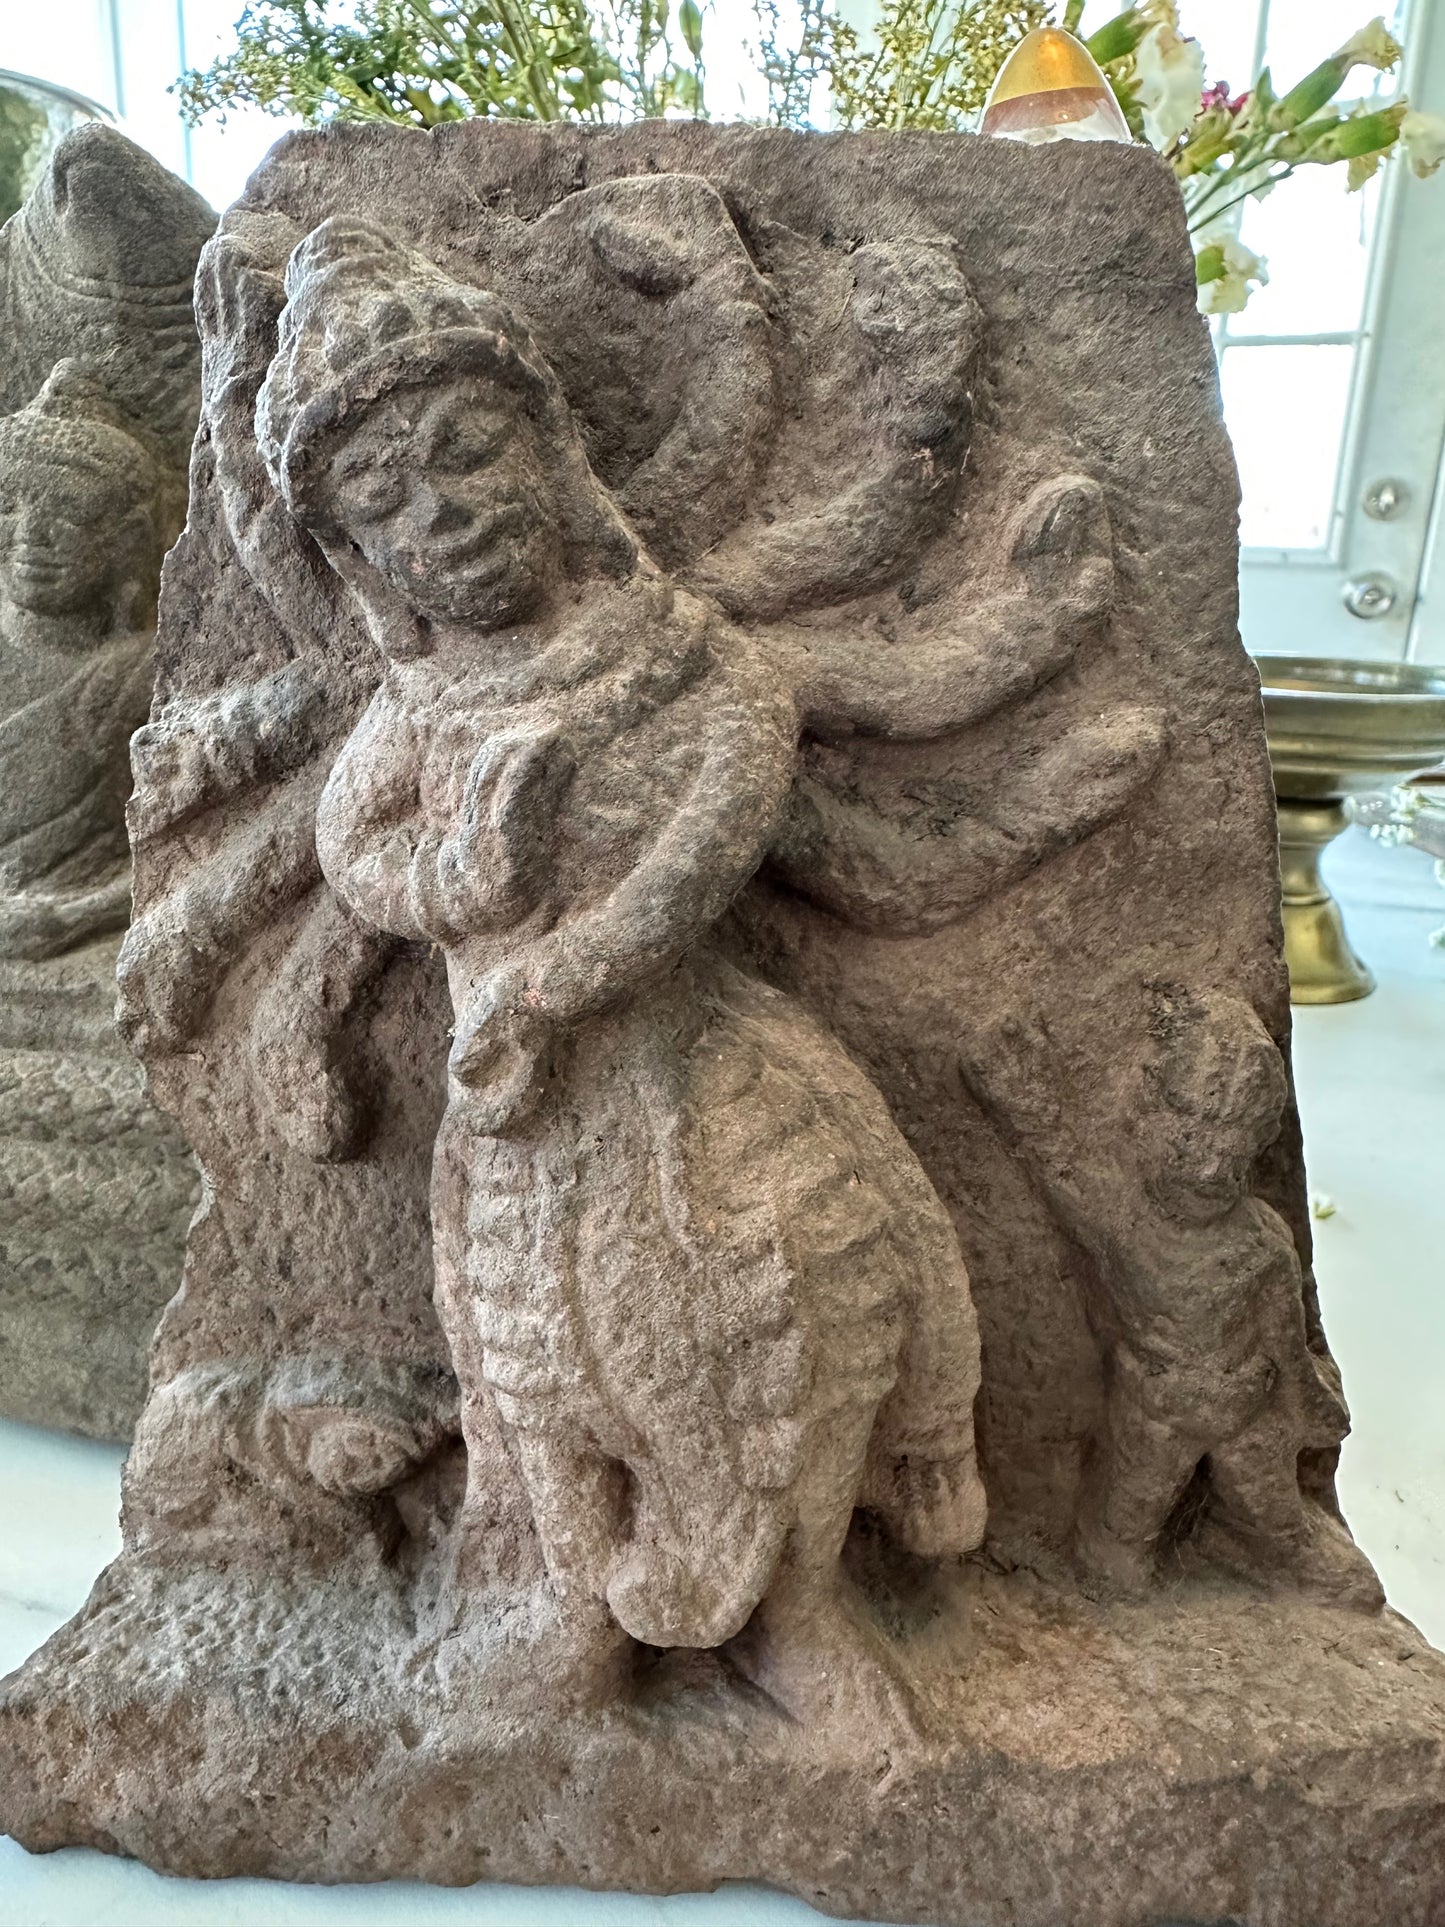 Antique stone statue of Godess Durga - circa 15th century-17th century #Durga - DharBazaar